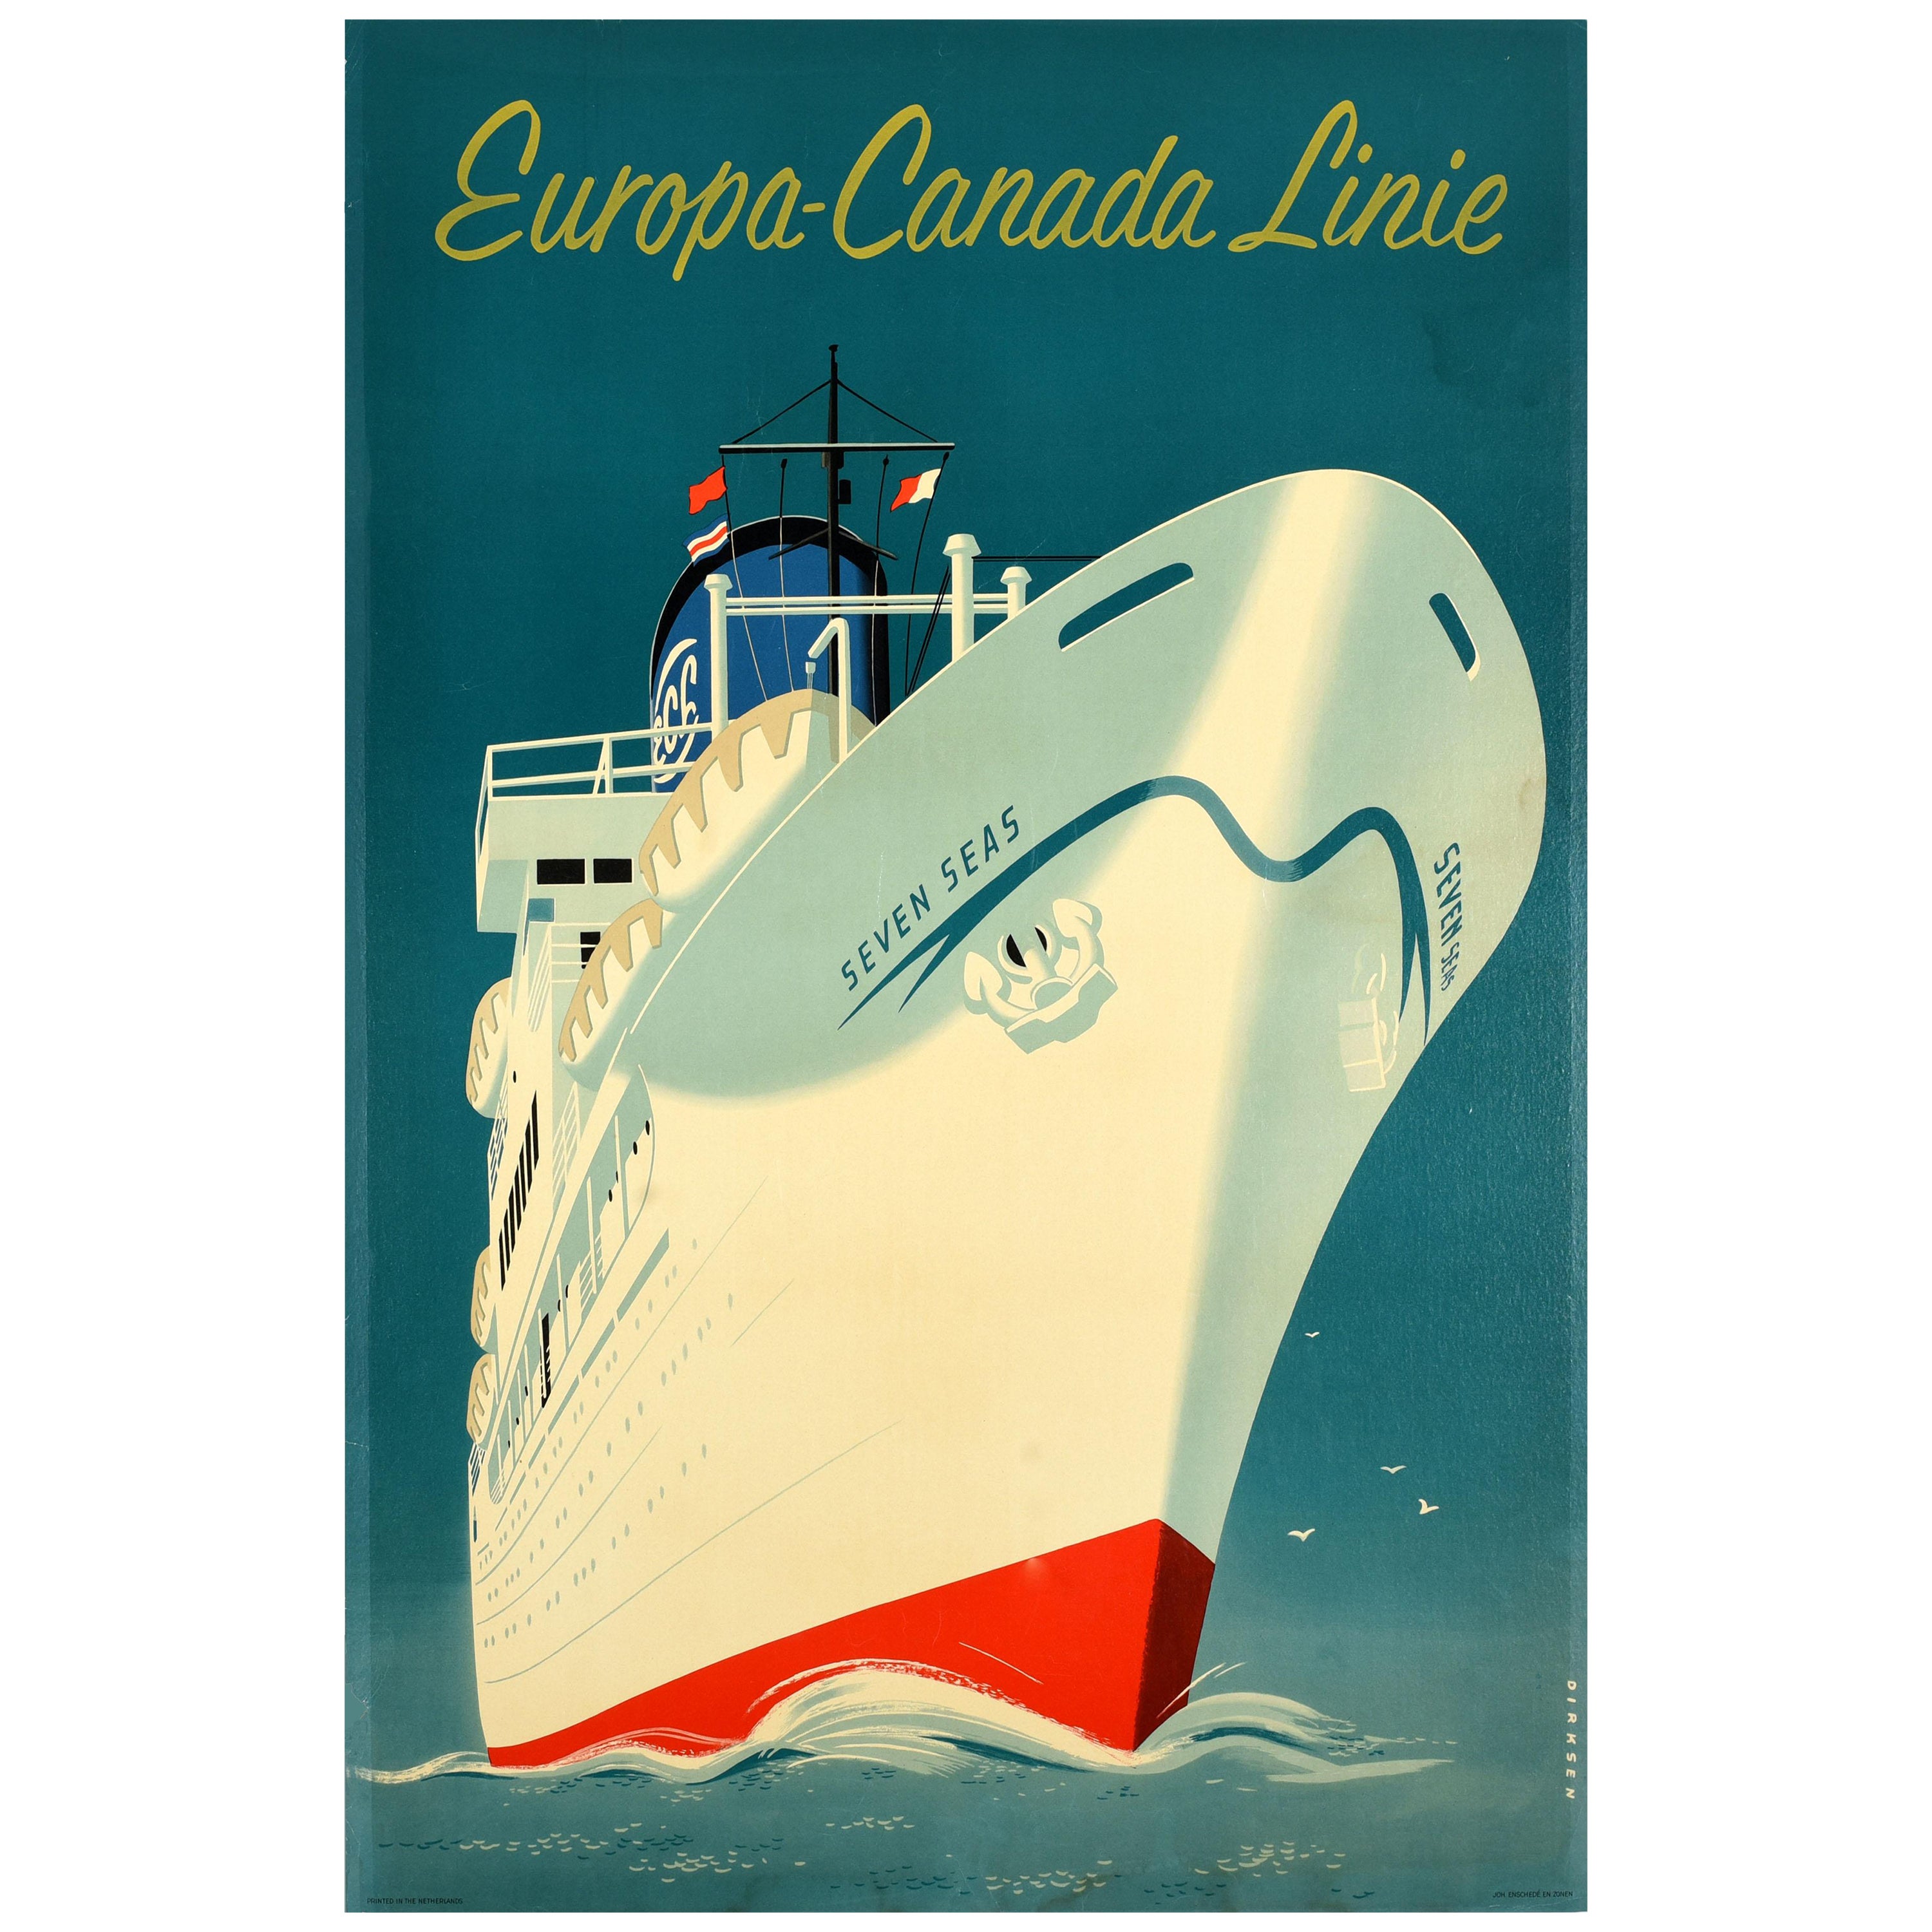 Original-Vintage-Reise-Werbeplakat, Europa, Kanada, Versandlinie Dirksen